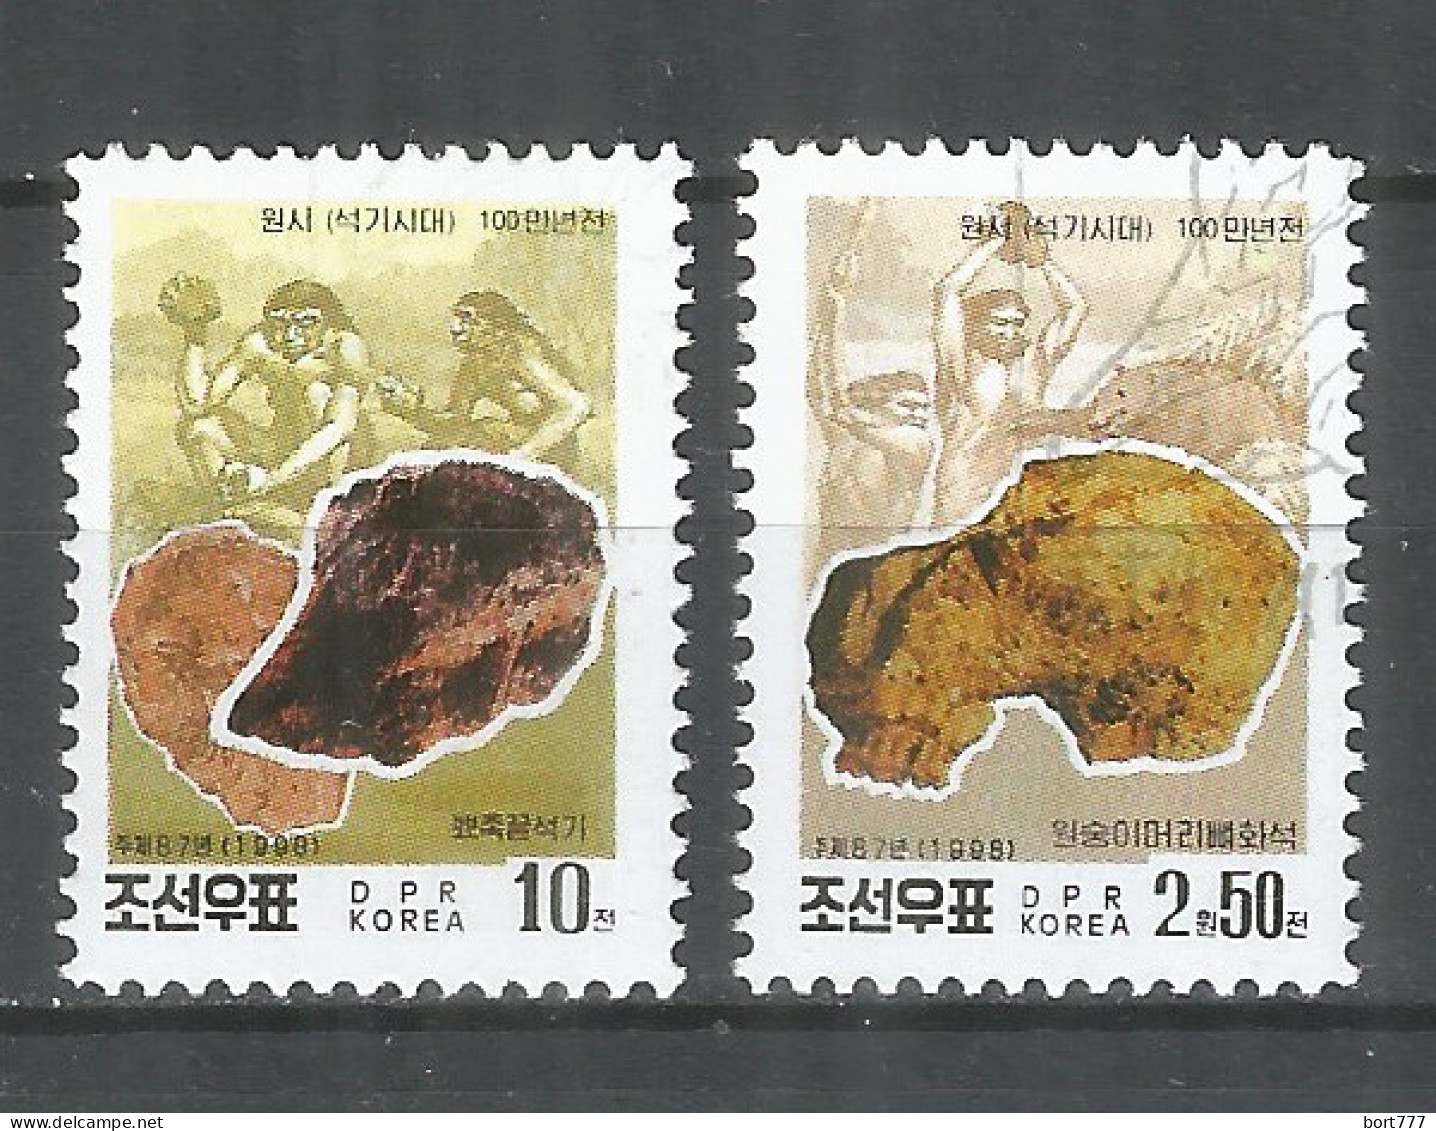 Korea 1998 Used Stamps Mi# 4035-4036 - Korea, North